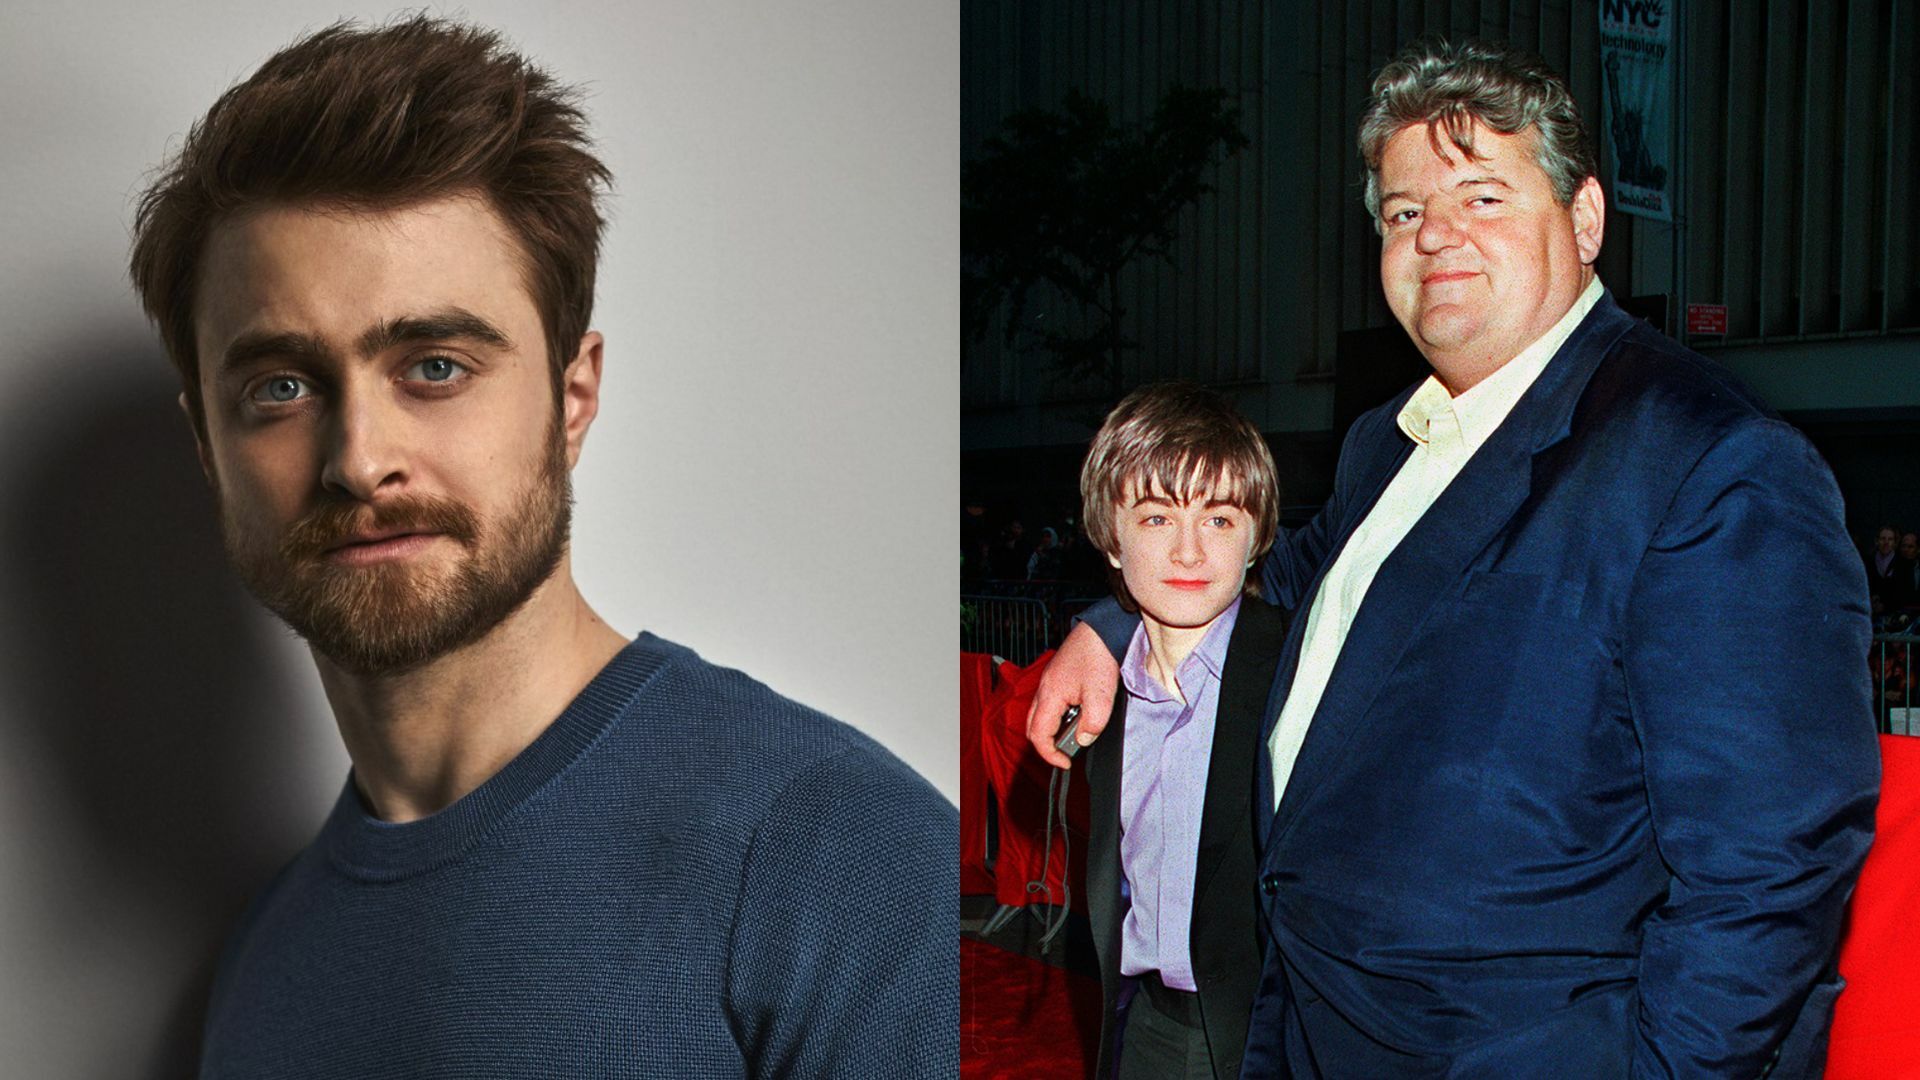 Solía hacernos reír cuando éramos niños en el set: Daniel Radcliffe tras la muerte de Robbie Coltrane